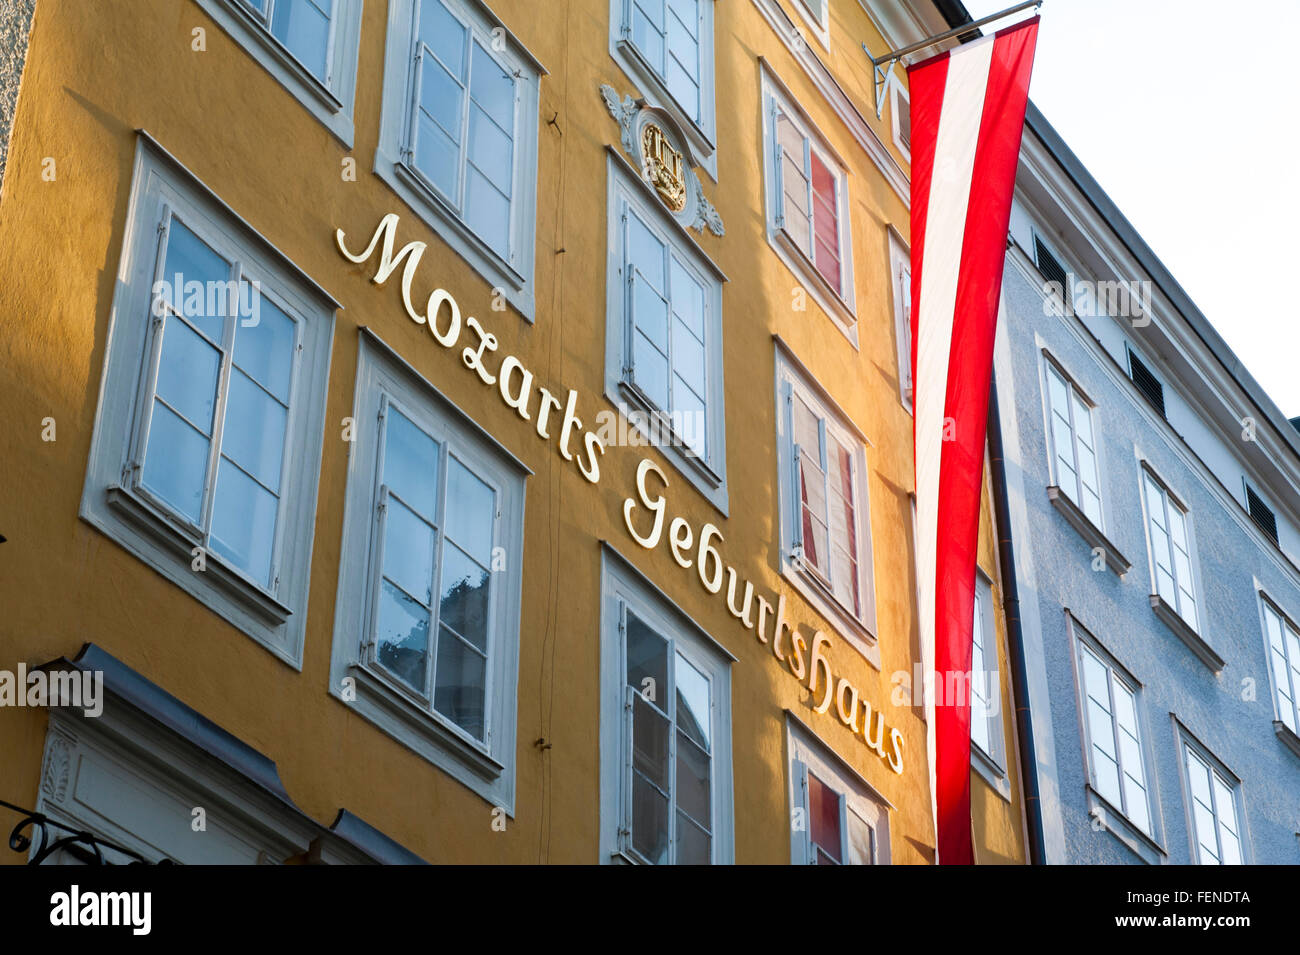 Mozarts Geburtshaus, Getreidegasse, das historische Zentrum der Stadt Salzburg, ein UNESCO-Weltkulturerbe, Österreich Stockfoto